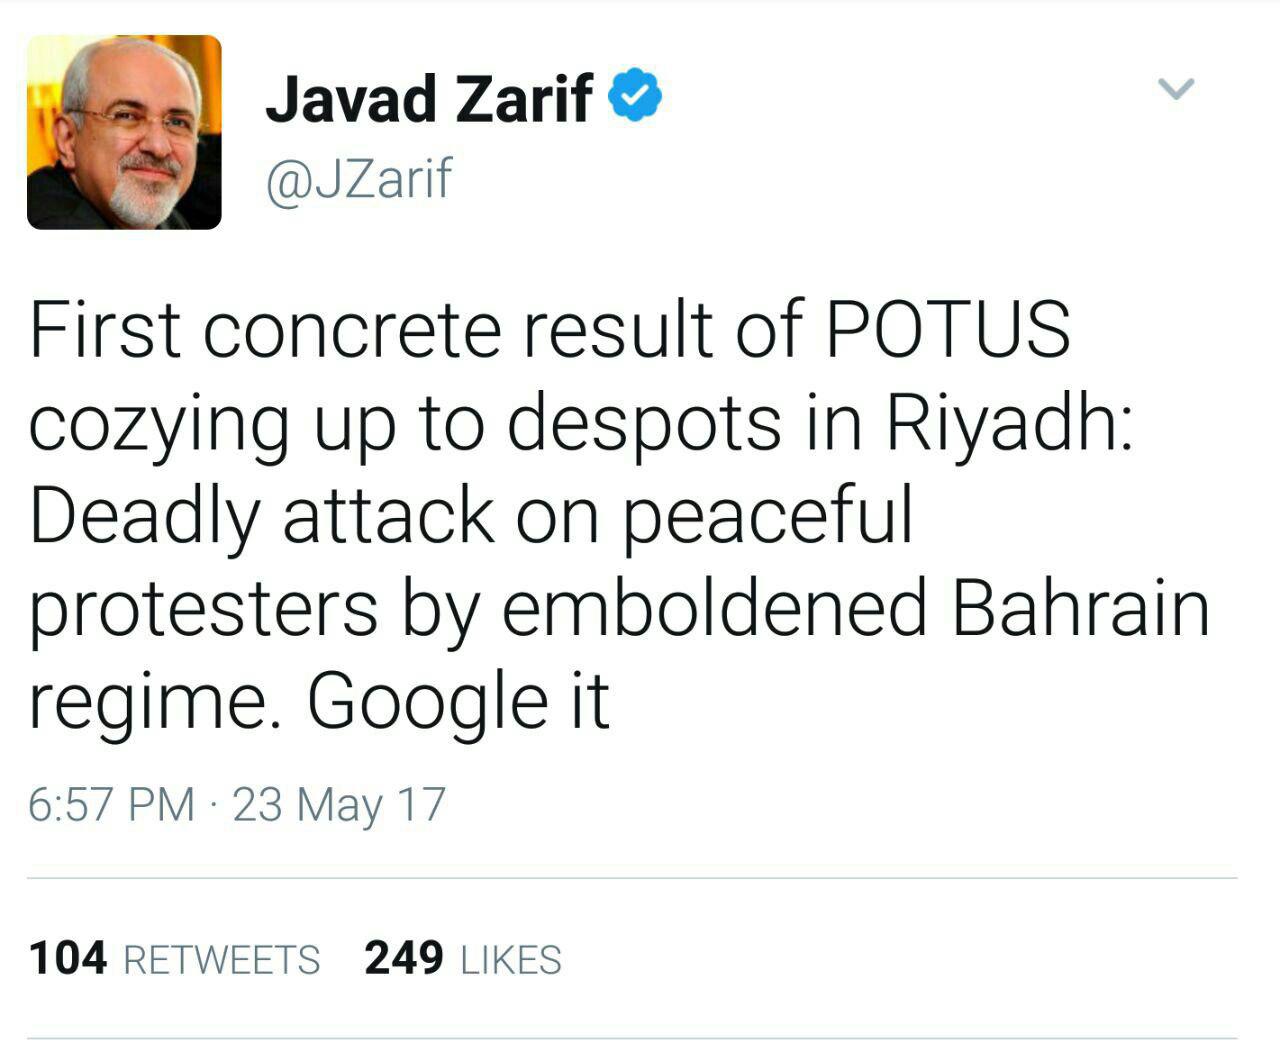 توییت ظریف: اولین نتیجه تایید حاکمان مستبد ریاض توسط رییس جمهور آمریکا